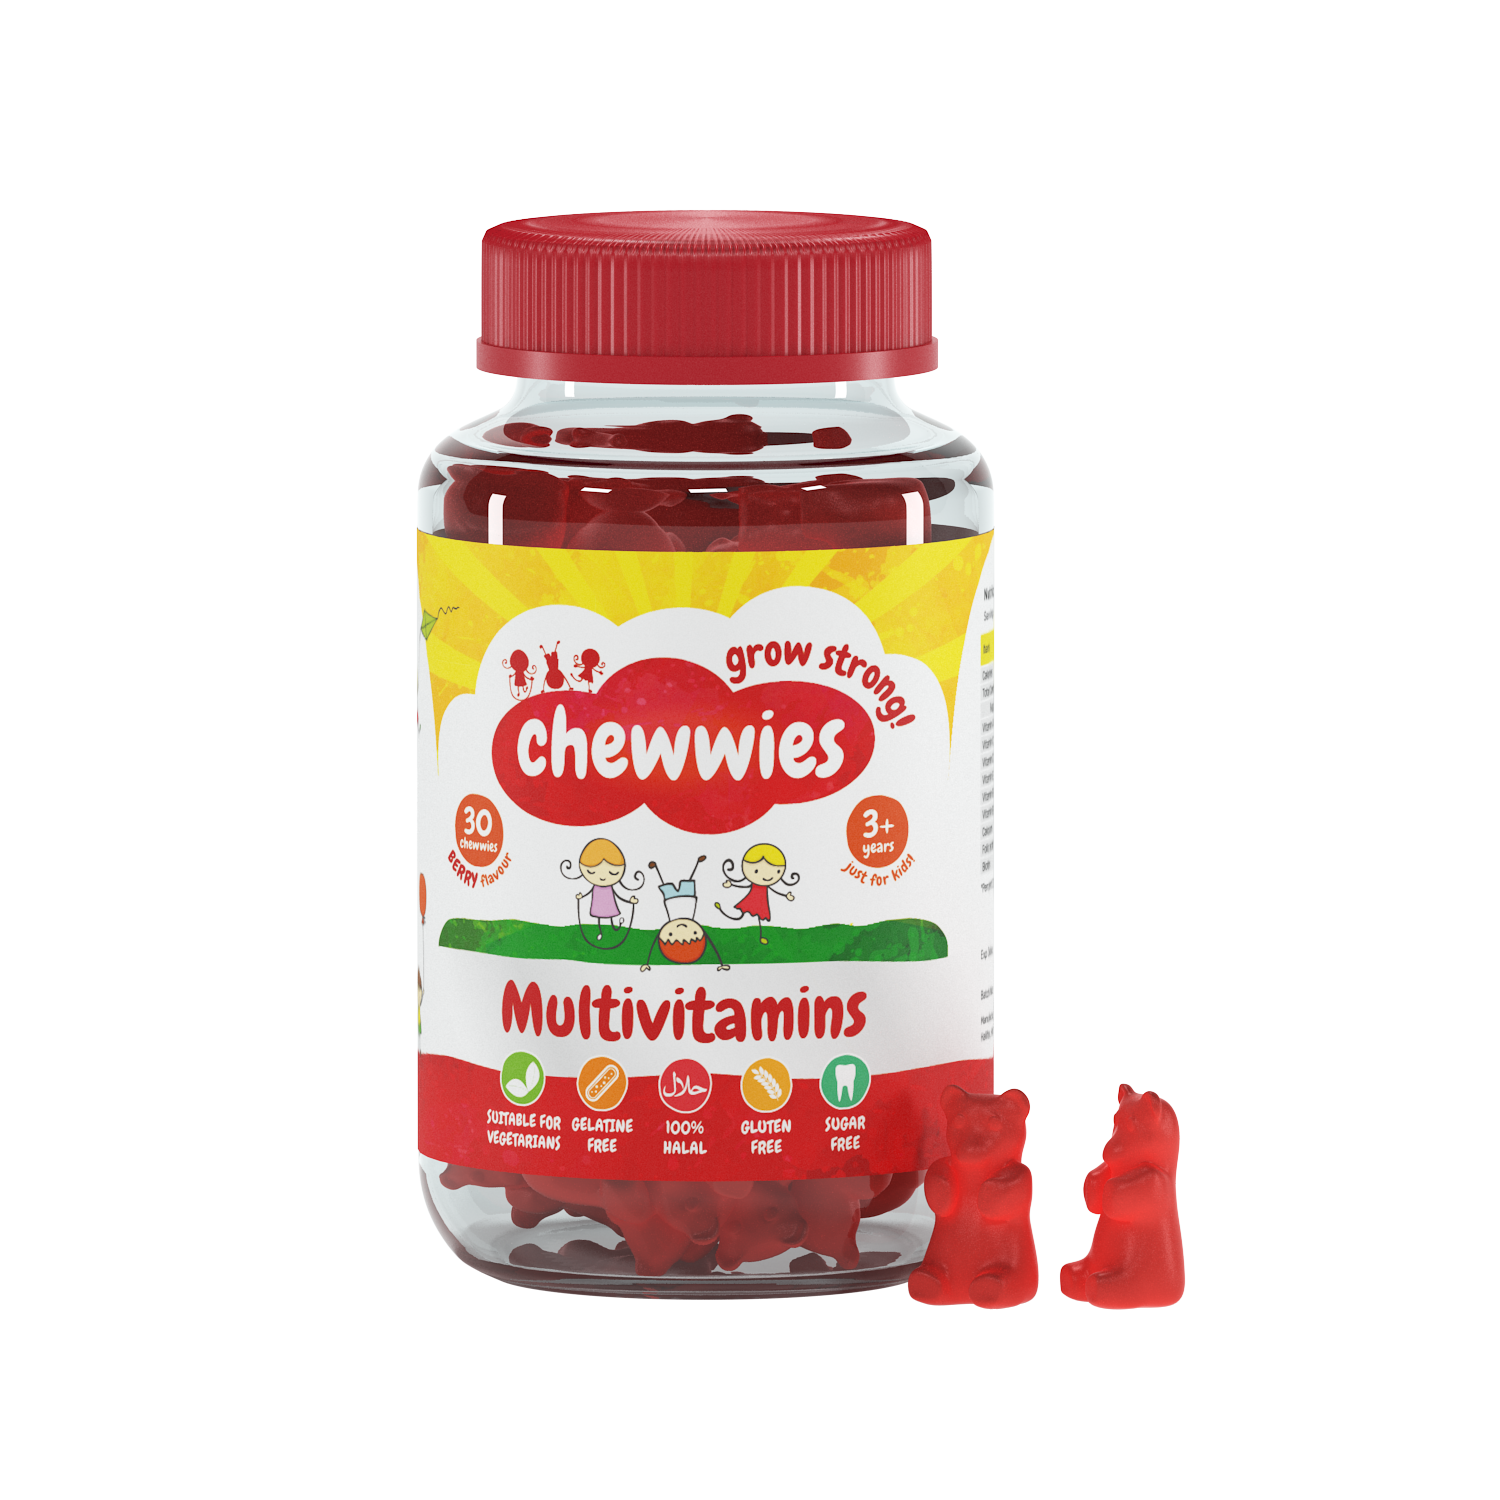 Chewwies Multivitamins, 30 vegane Fruchtgummis, die Nummer 1 unter den gelatine- & zuckerfreien Vitaminpräparaten in GB